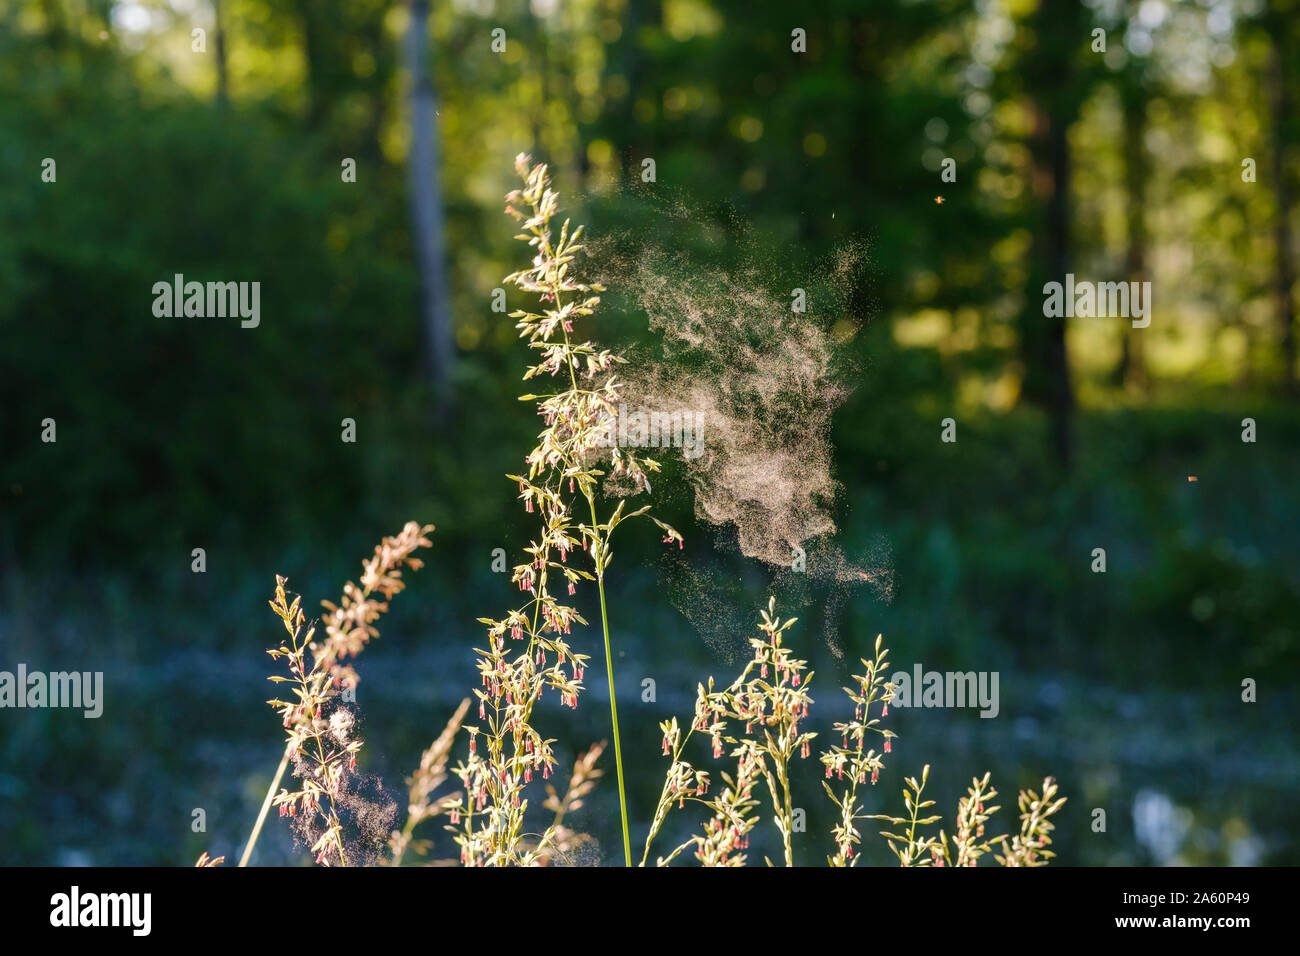 In der Nähe von Spider web auf blühende Pflanzen in Wald, Bayern, Deutschland Stockfoto